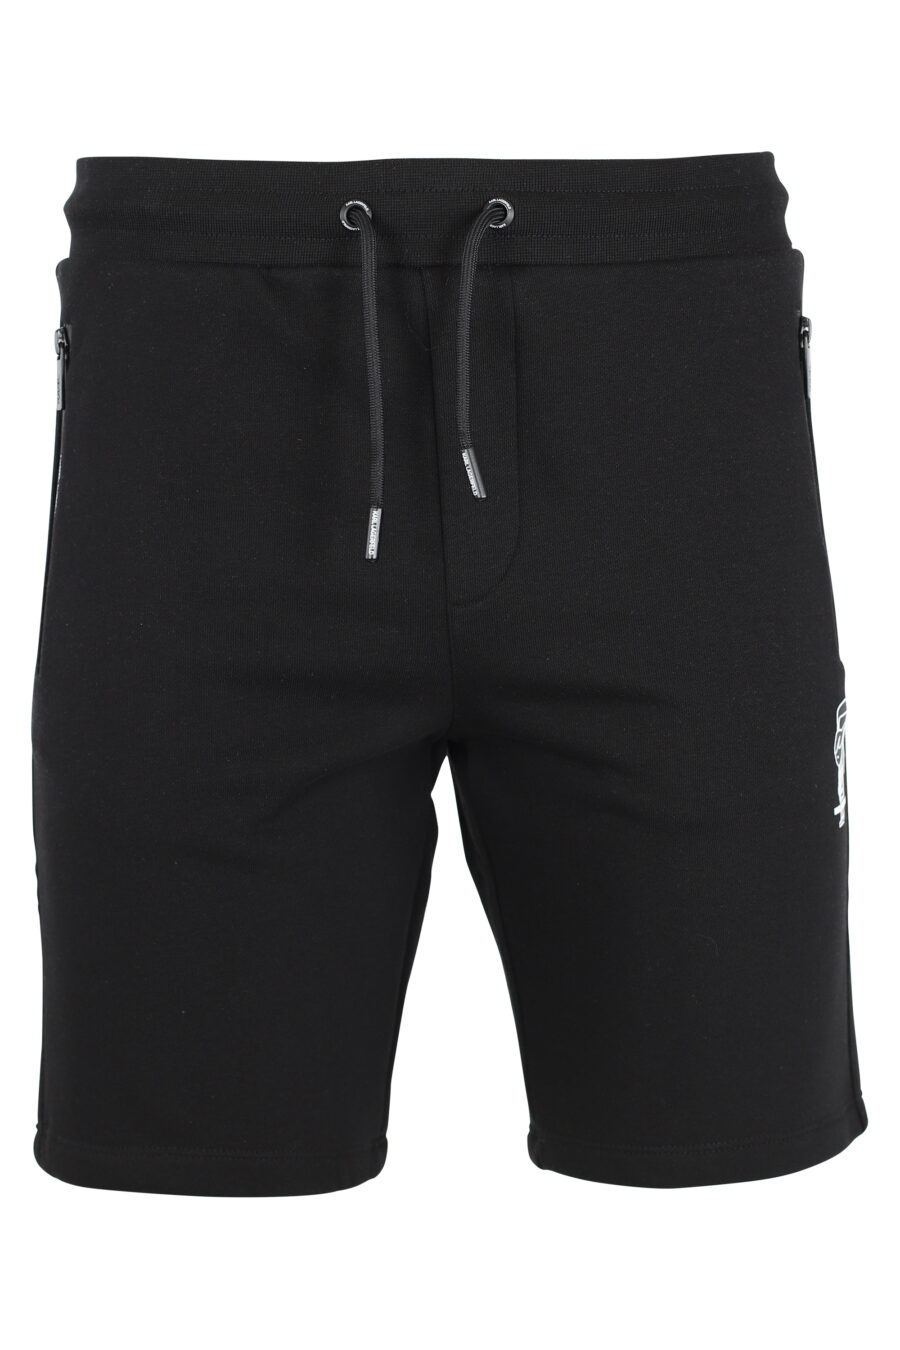 Pantalón de chándal negro corto con minilogo "karl" en silueta blanco - IMG 9505